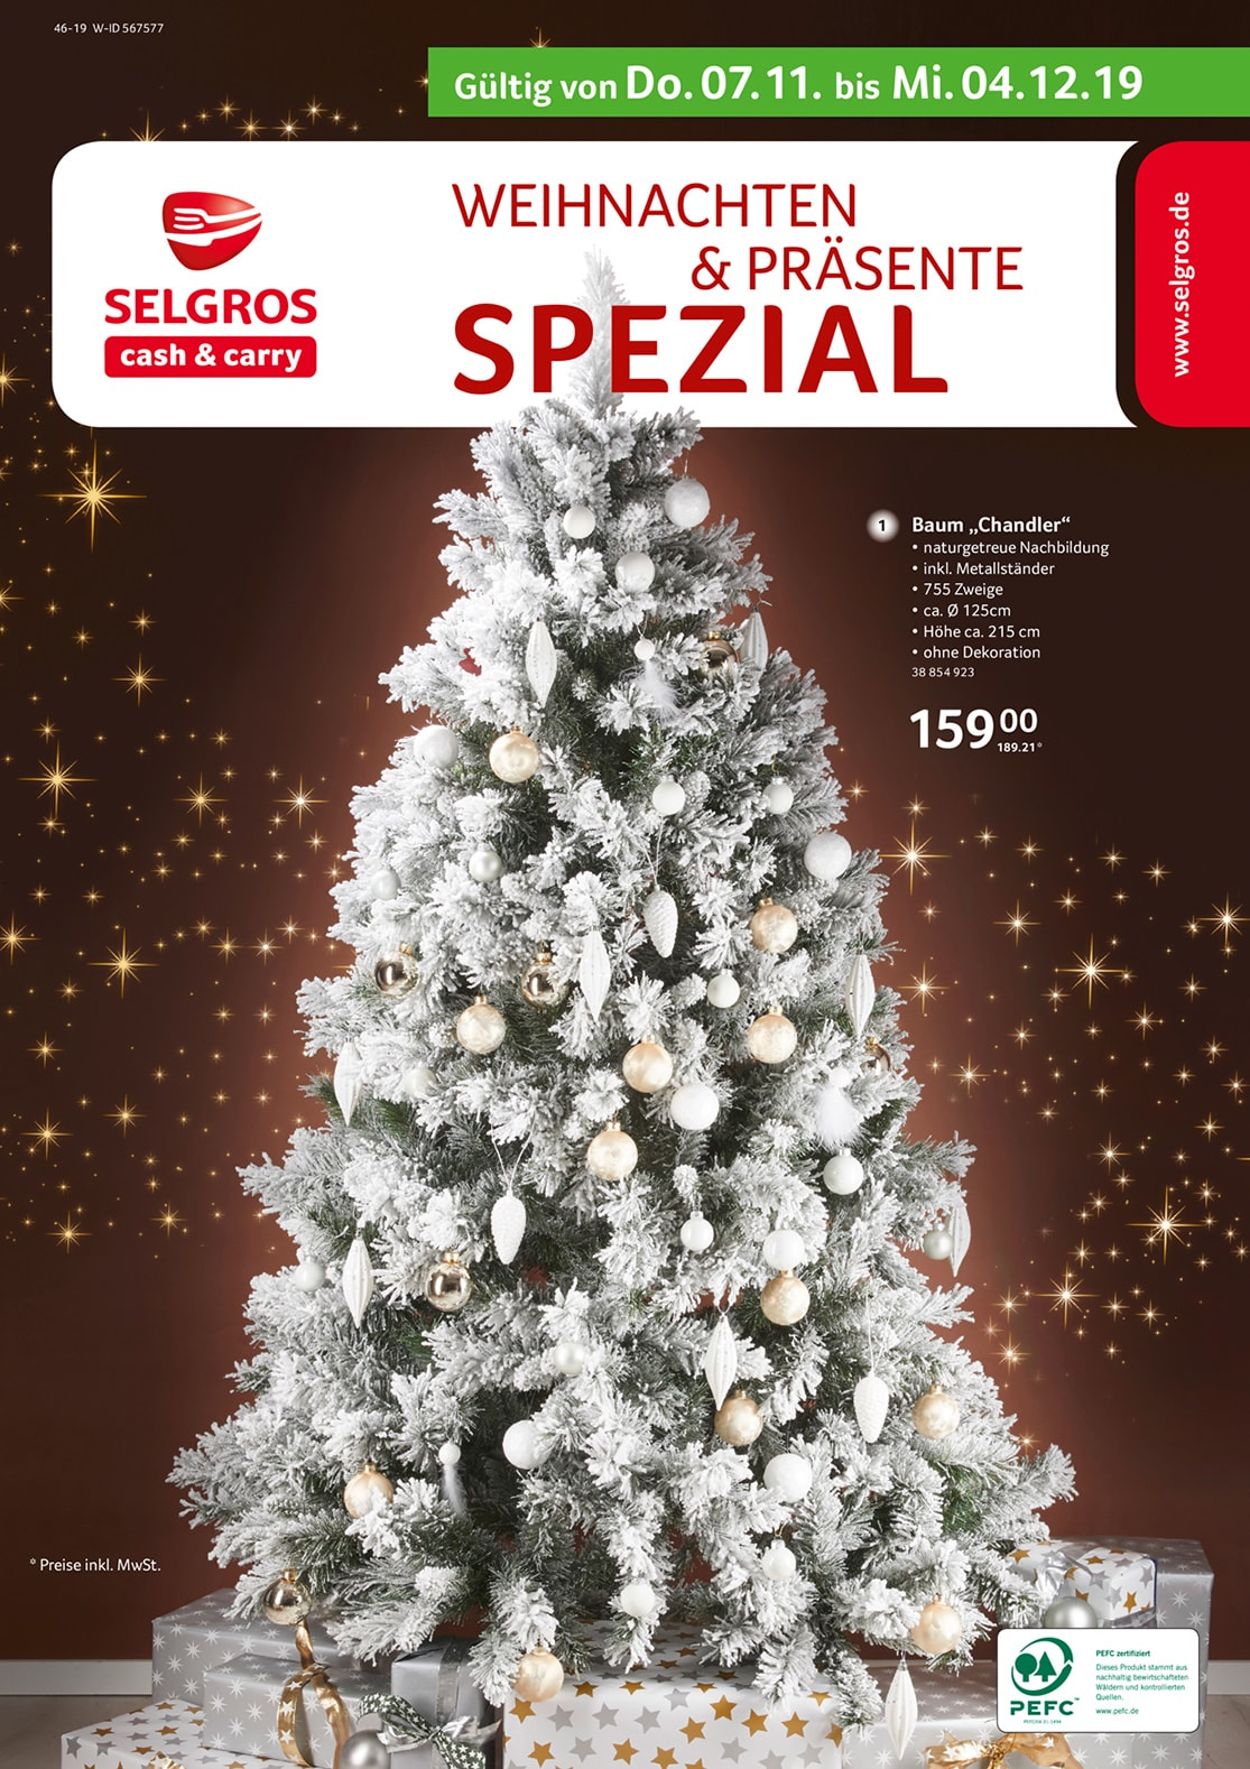 Selgros - Weihnachtsprospekt 2019 Prospekt - Aktuell vom 07.11-04.12.2019